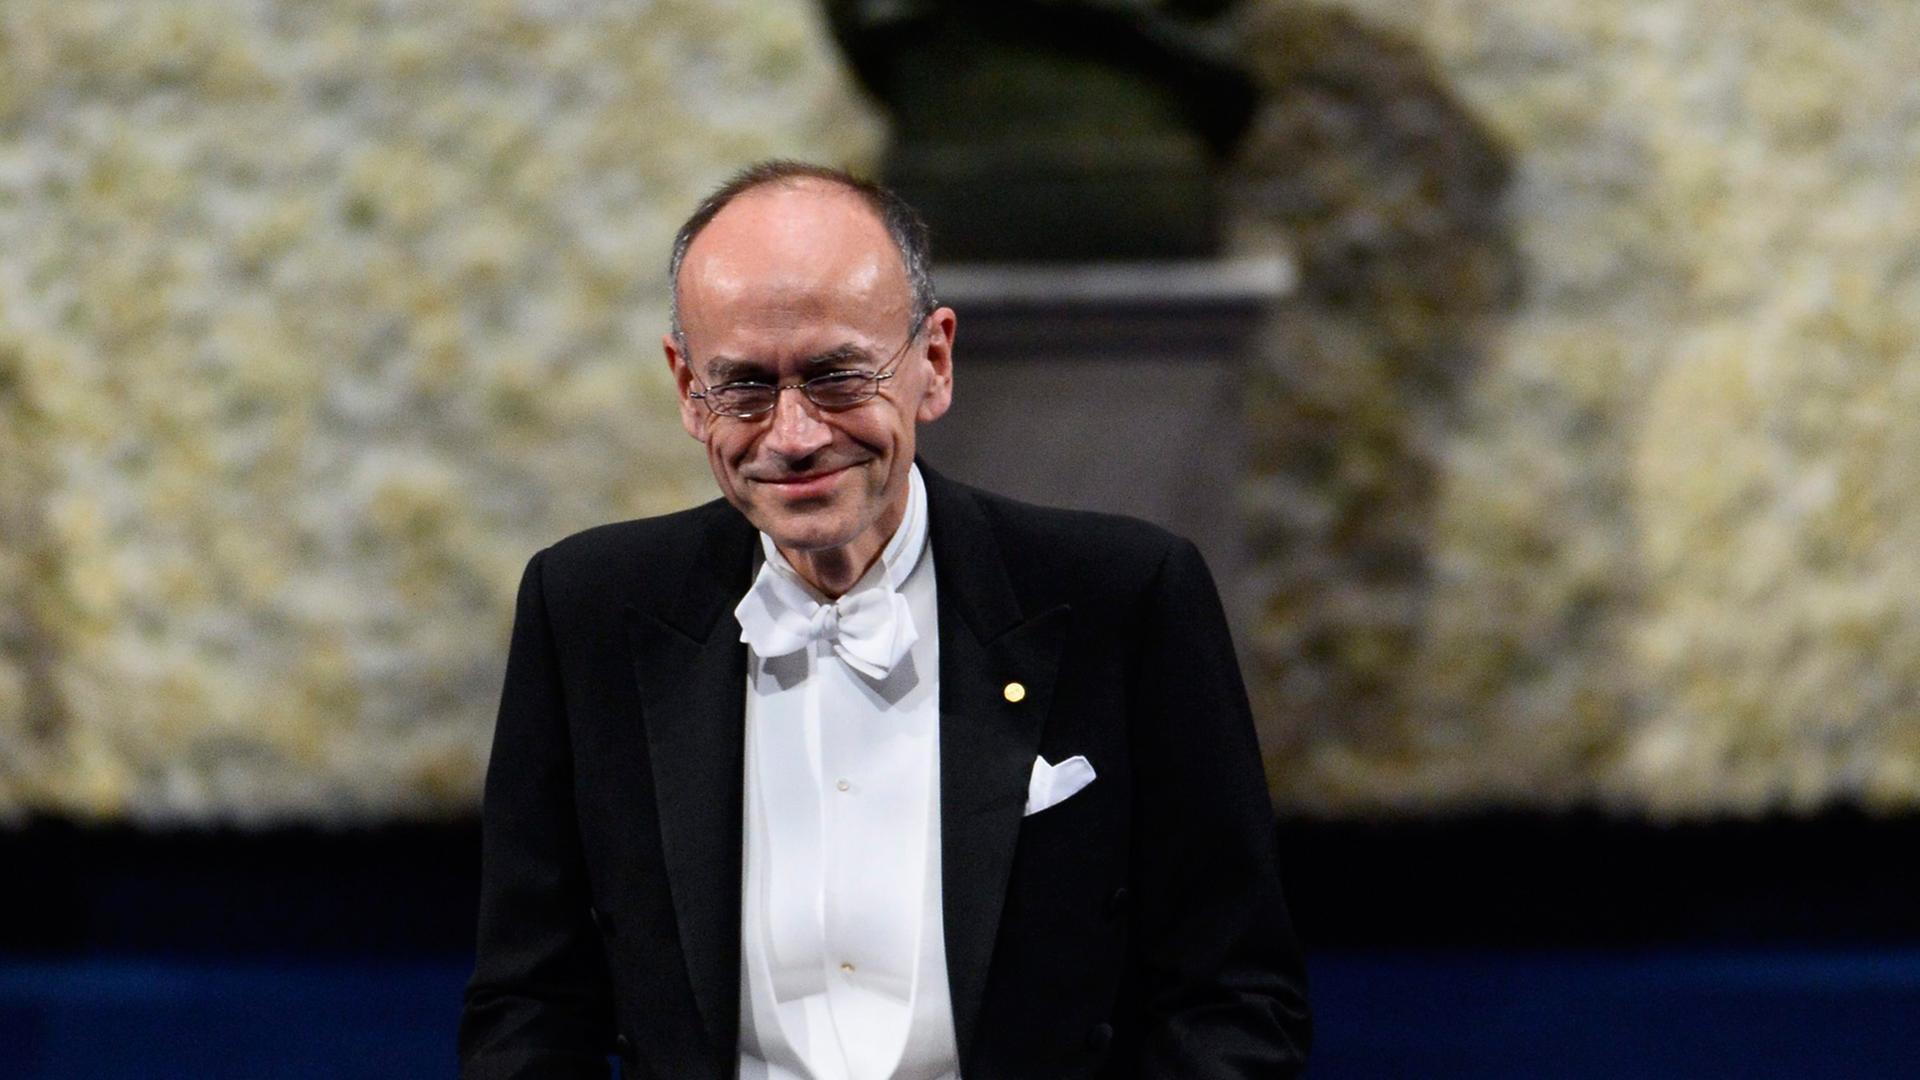 Waldorfschüler Thomas Südhof erhält Nobelpreis 